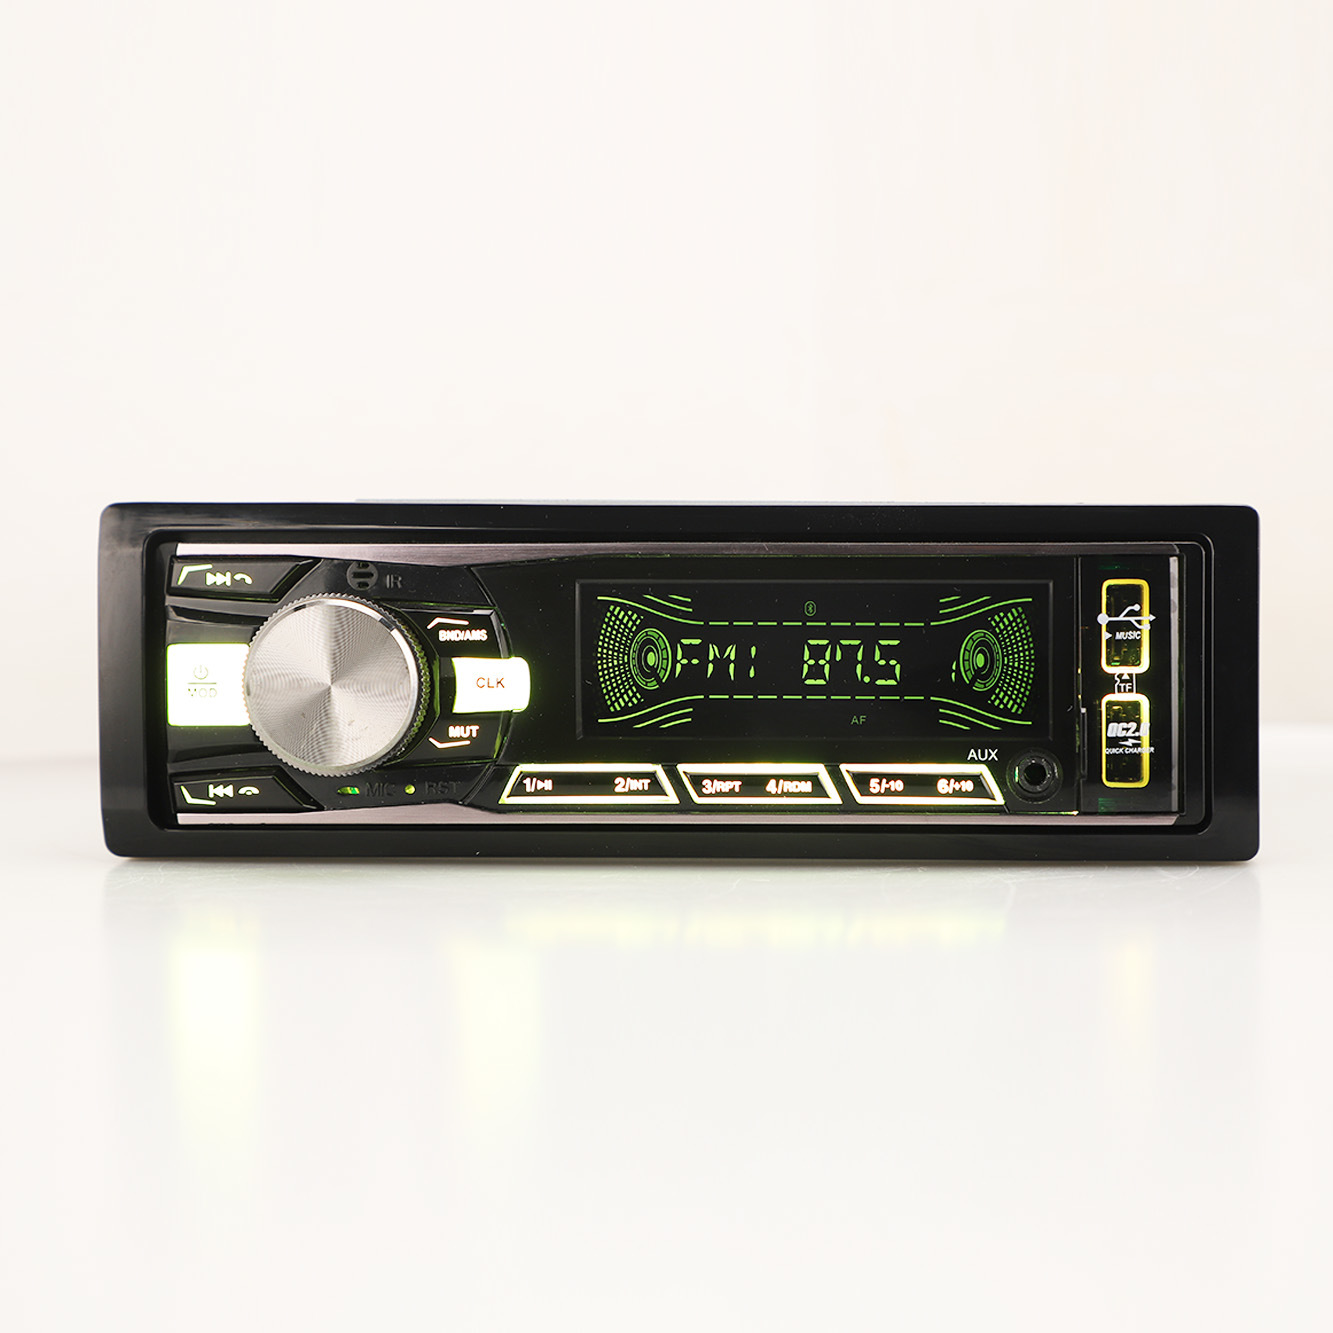 Painel fixo de áudio automático, reprodutor de mp3, transmissor fm, áudio estéreo para carro, acessórios para carro, din único, reprodutor de carro